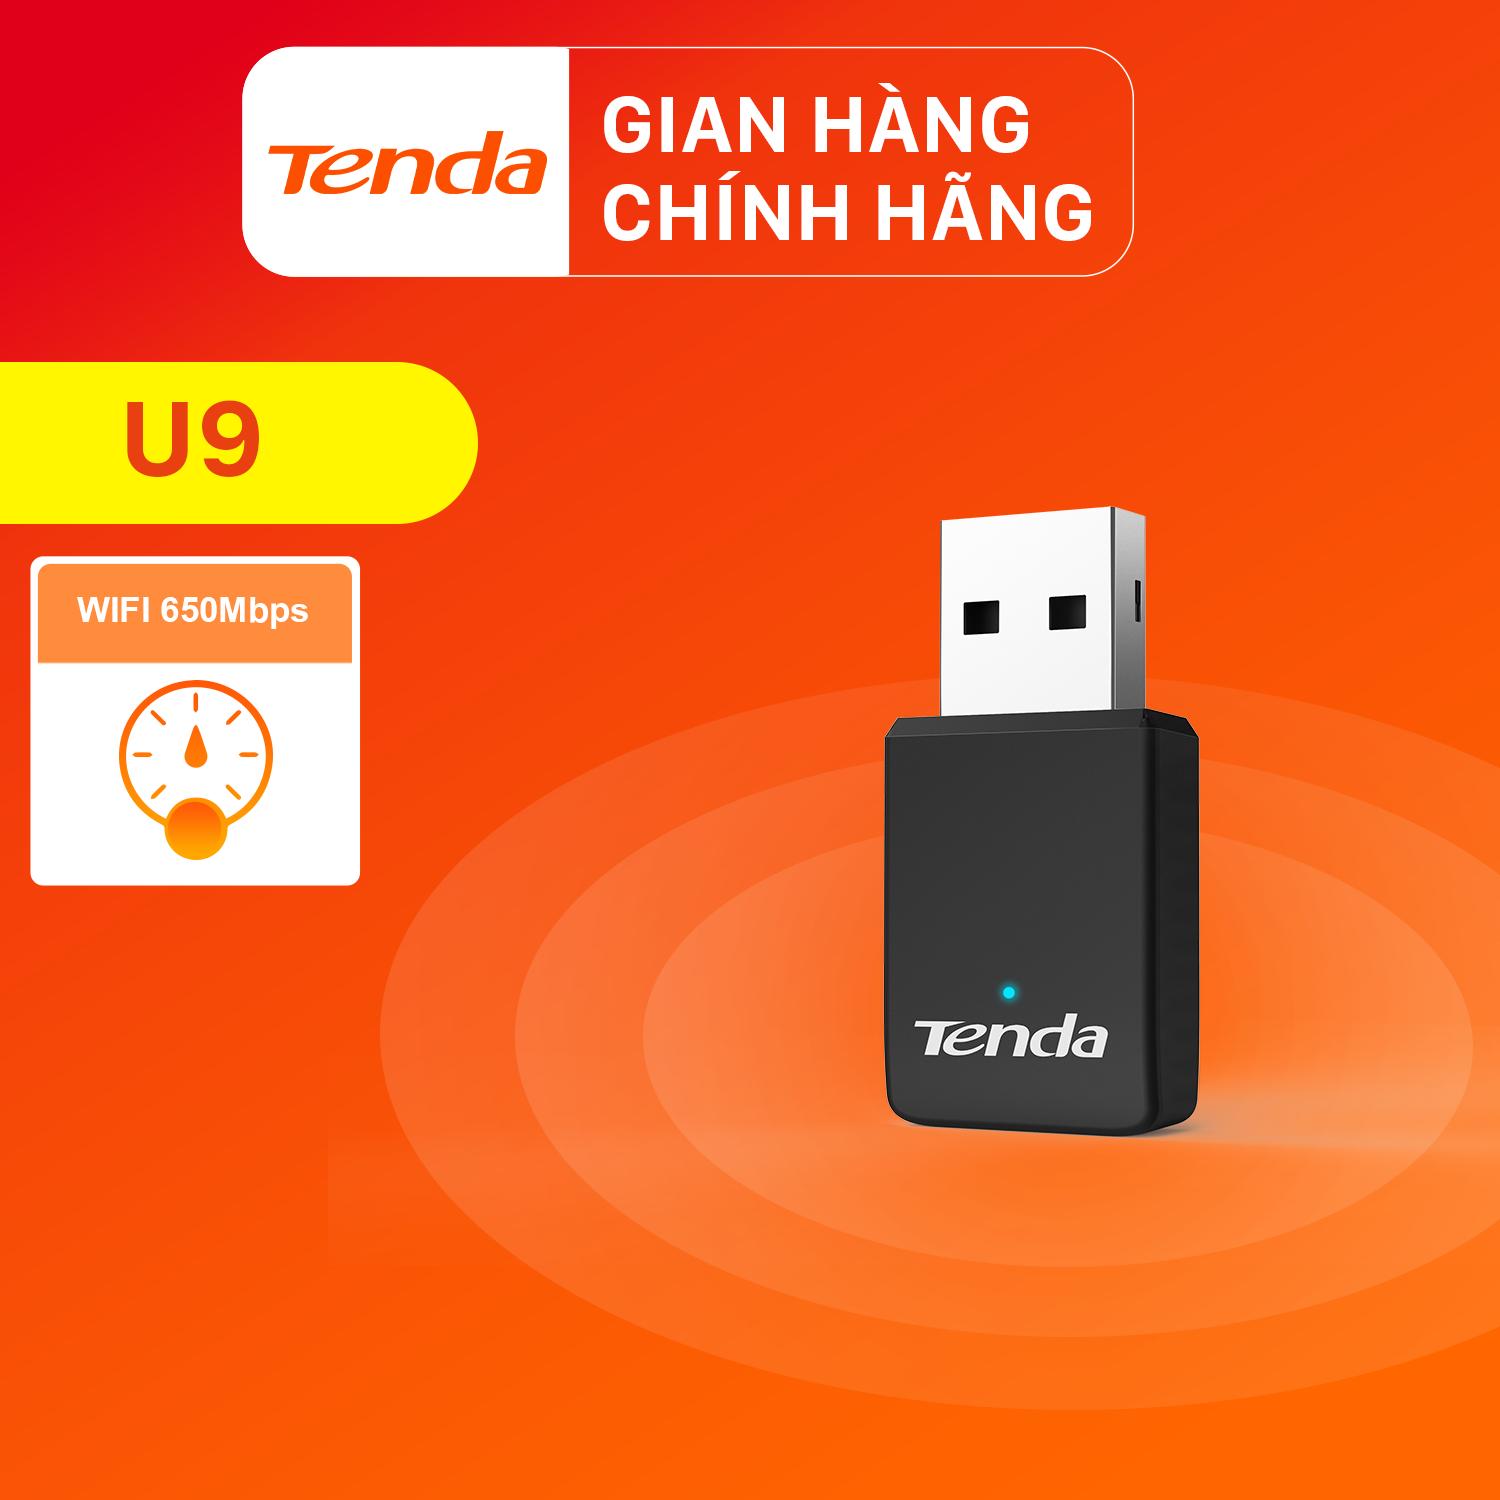 Tenda USB kết nối Wifi U9 chuẩn AC tốc độ 650Mbps - Hãng chính hãng